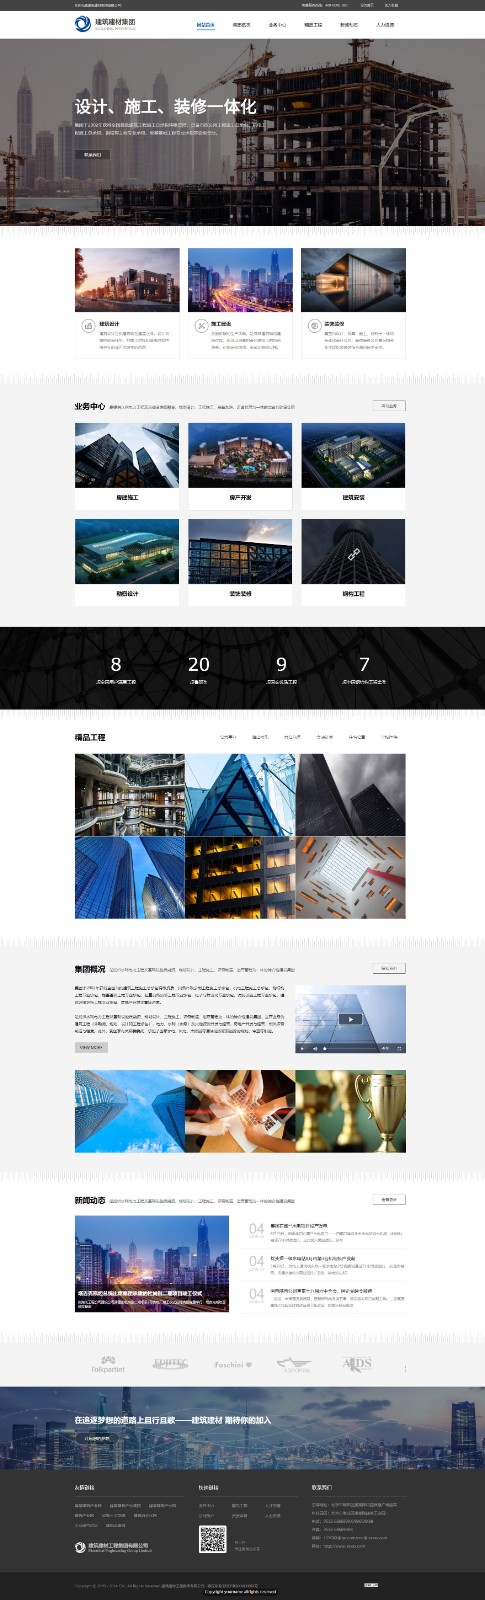 建筑、建材网站模板-architecture-451